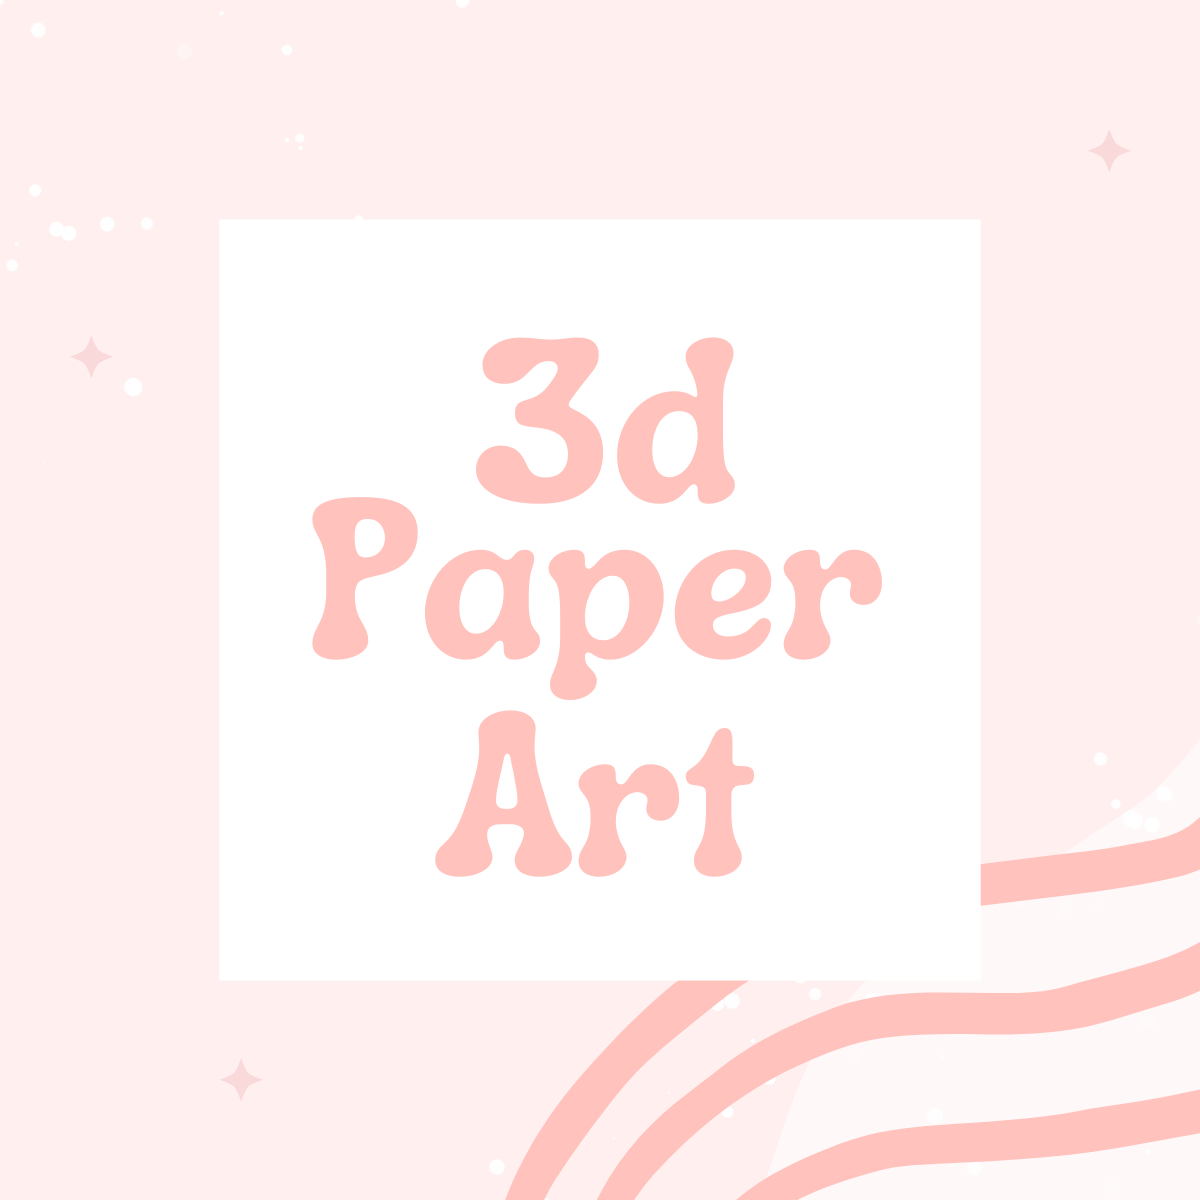 3D paper art